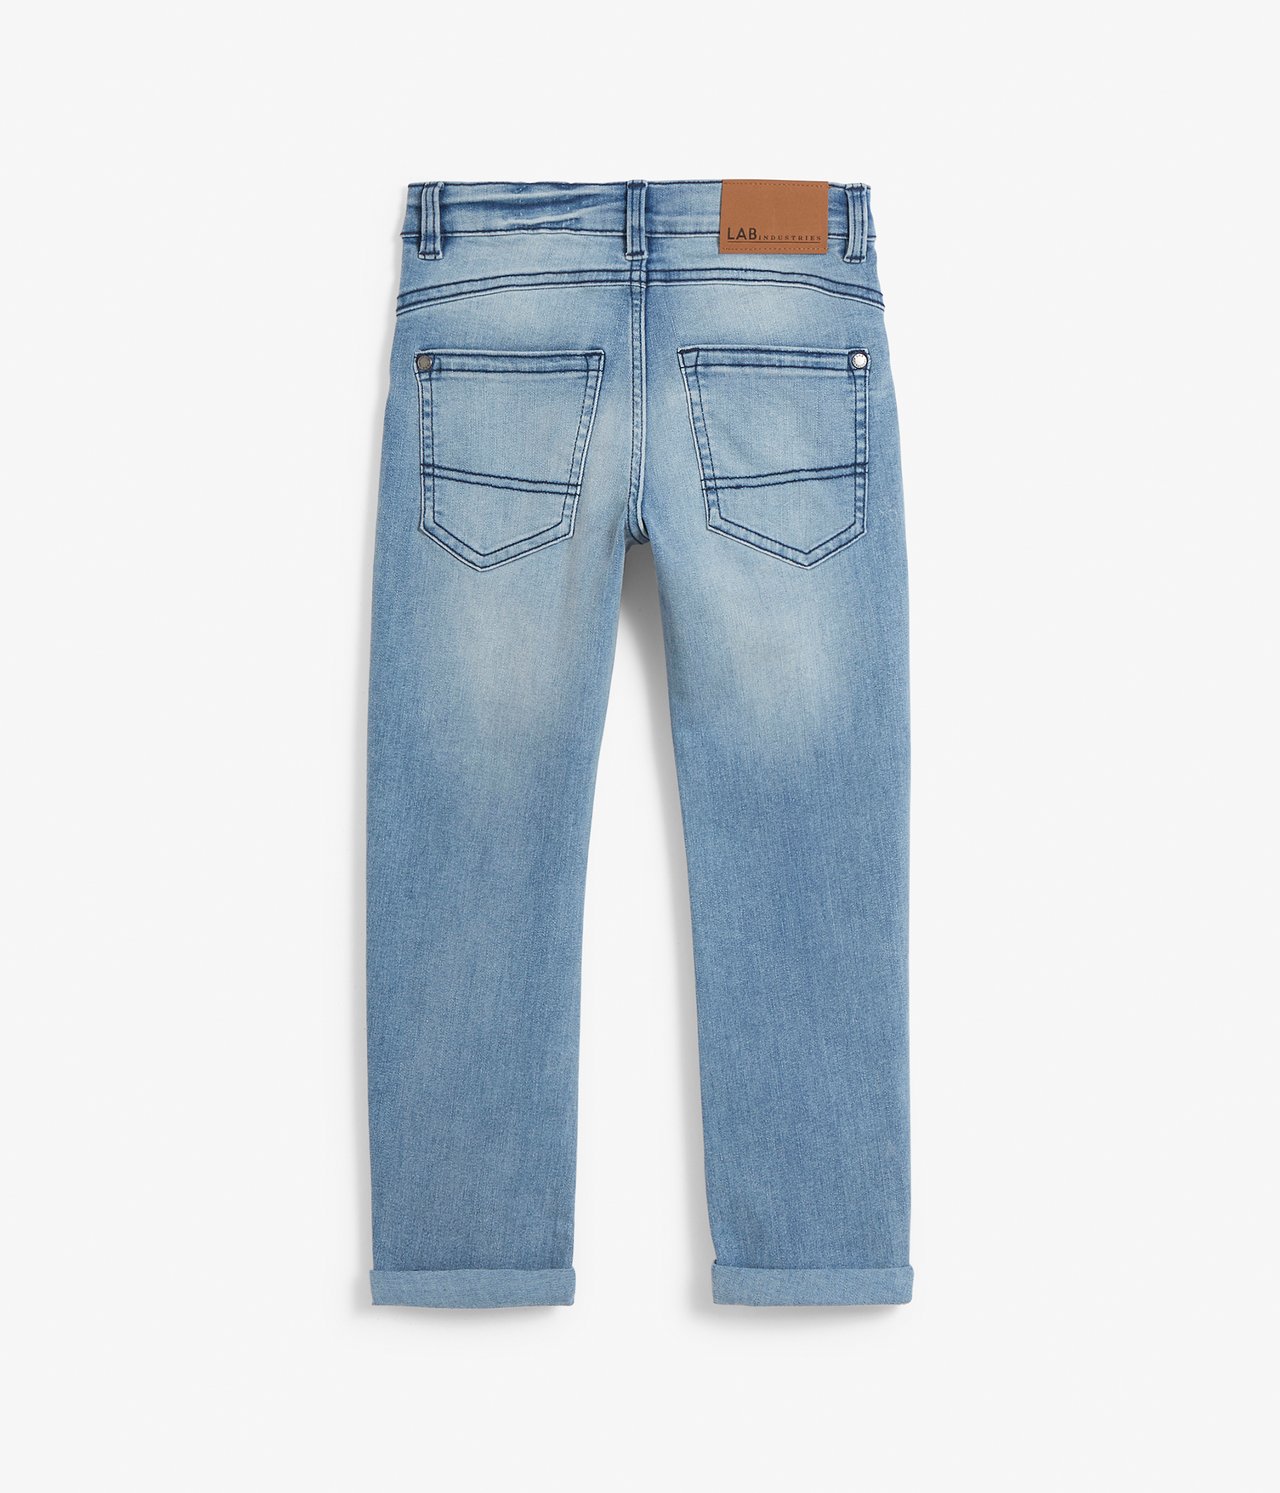 Bill jeans relaxed fit - Sininen - 7